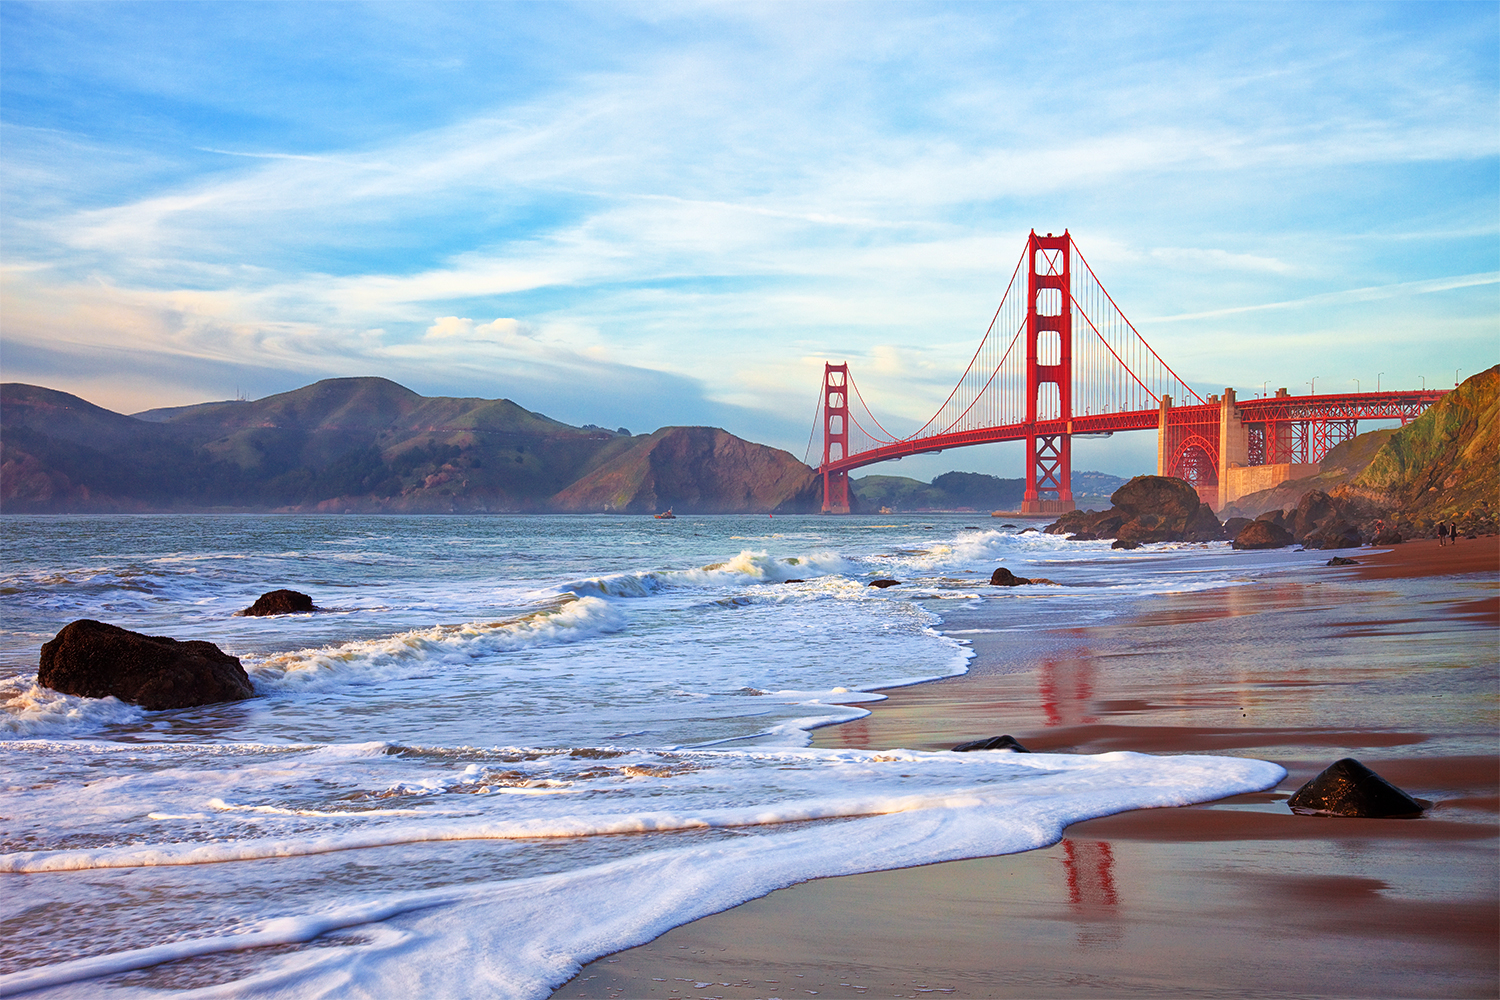 De beroemde Golden Gate Bridge in San Francisco